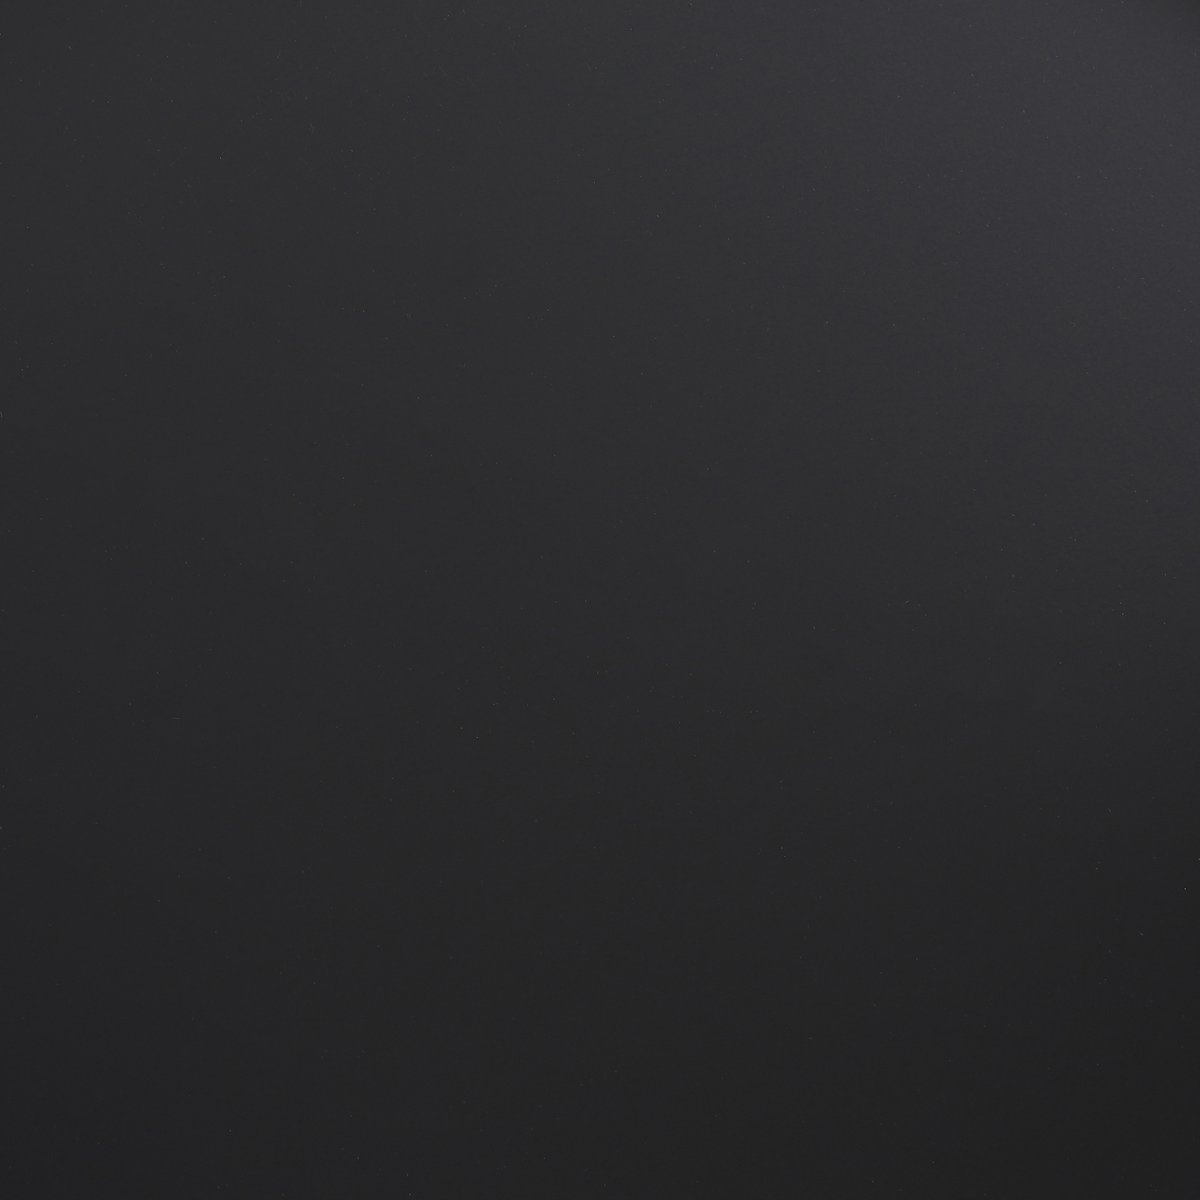 KantoormeubelenPlus Goa Bijzettafel - Set van 2 - L35 x B35 x H55 cm - Metaal - Zwart